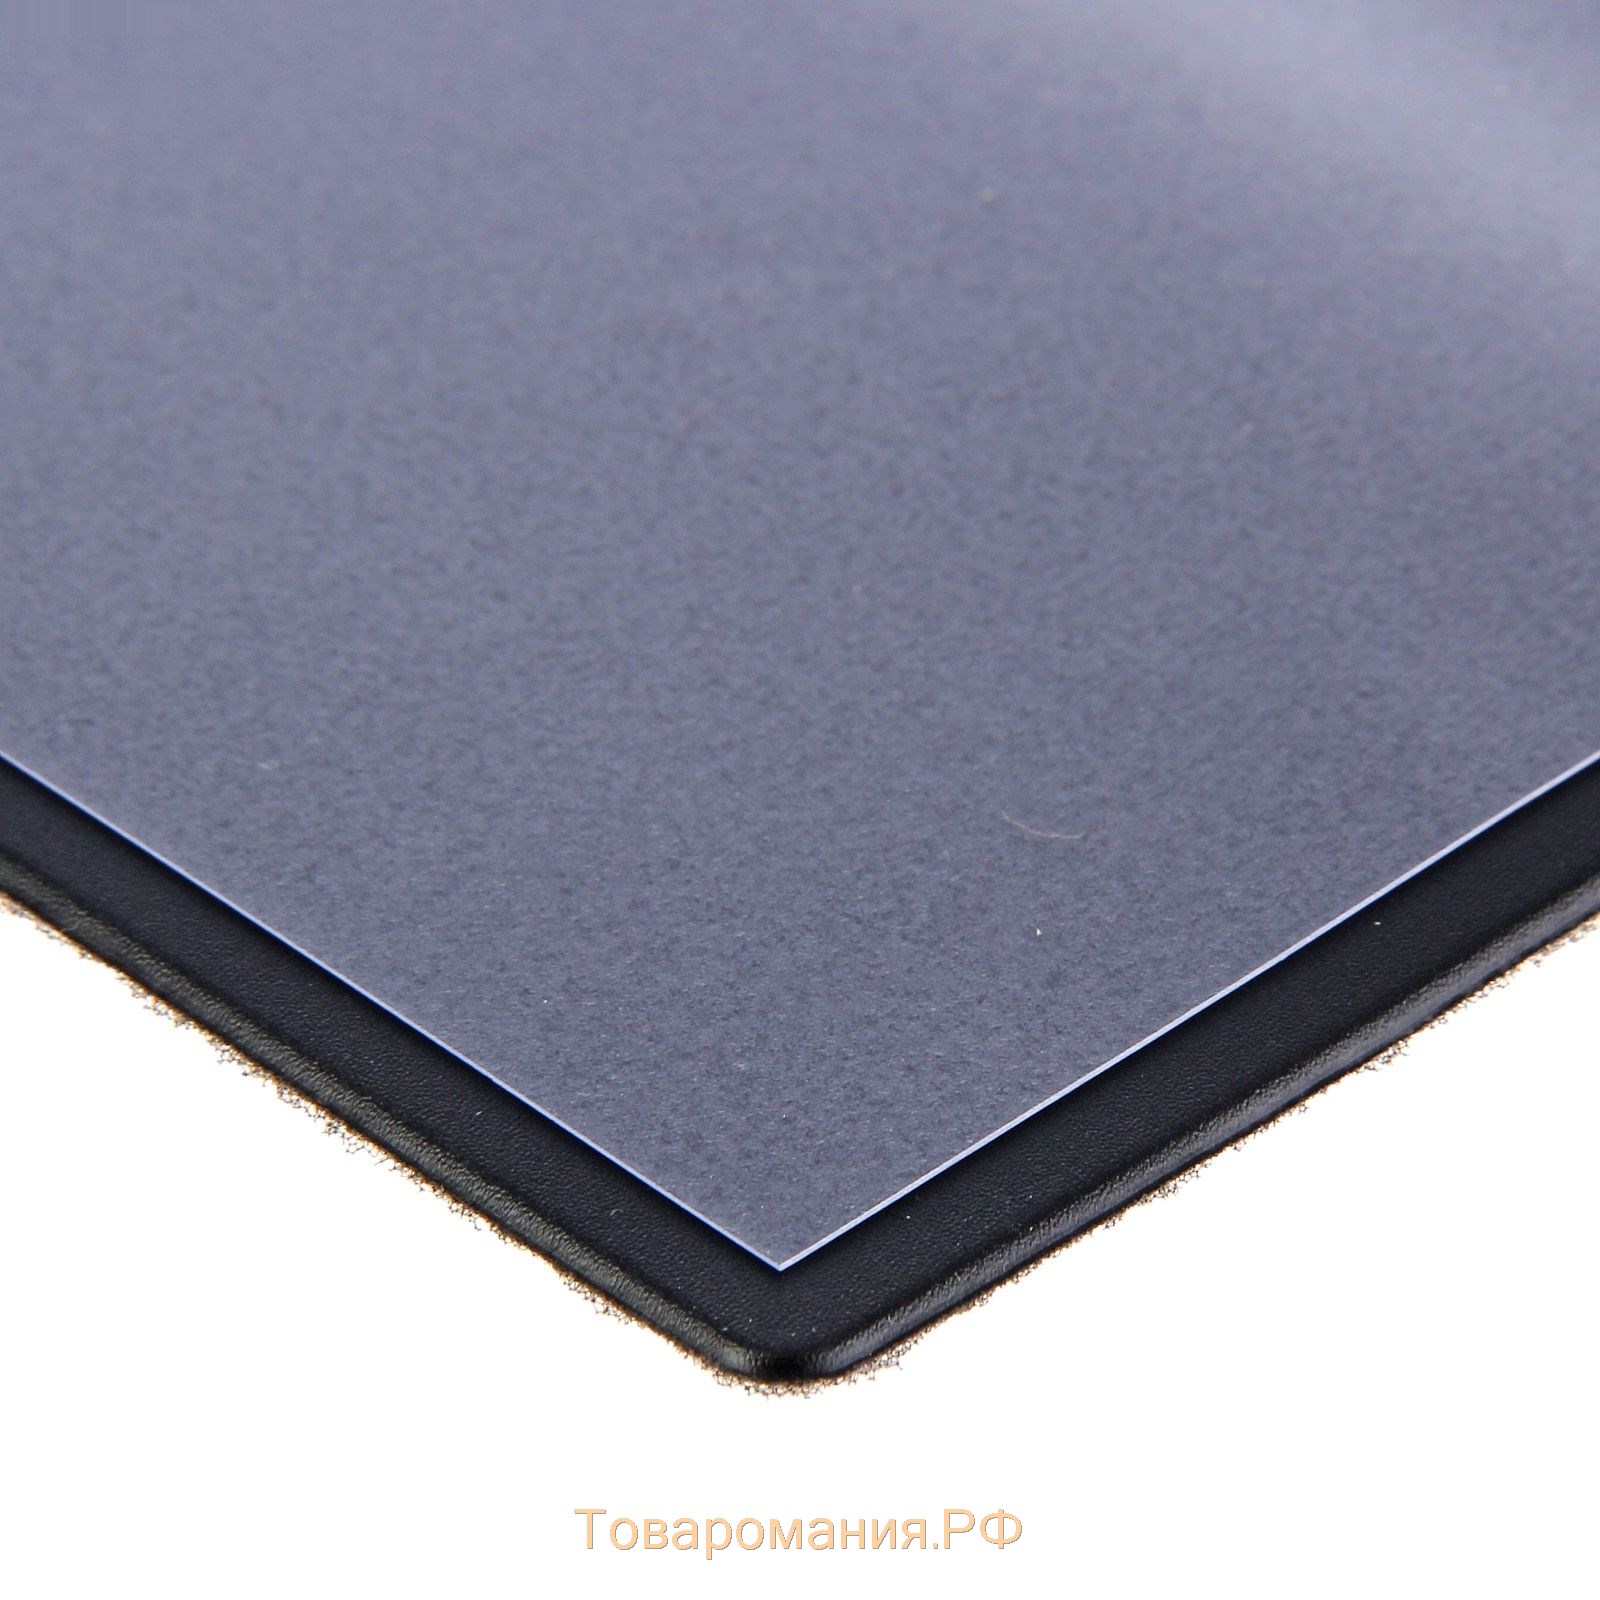 Коврик на стол durable 520х650 мм синий (с прозрачным верхним листом)